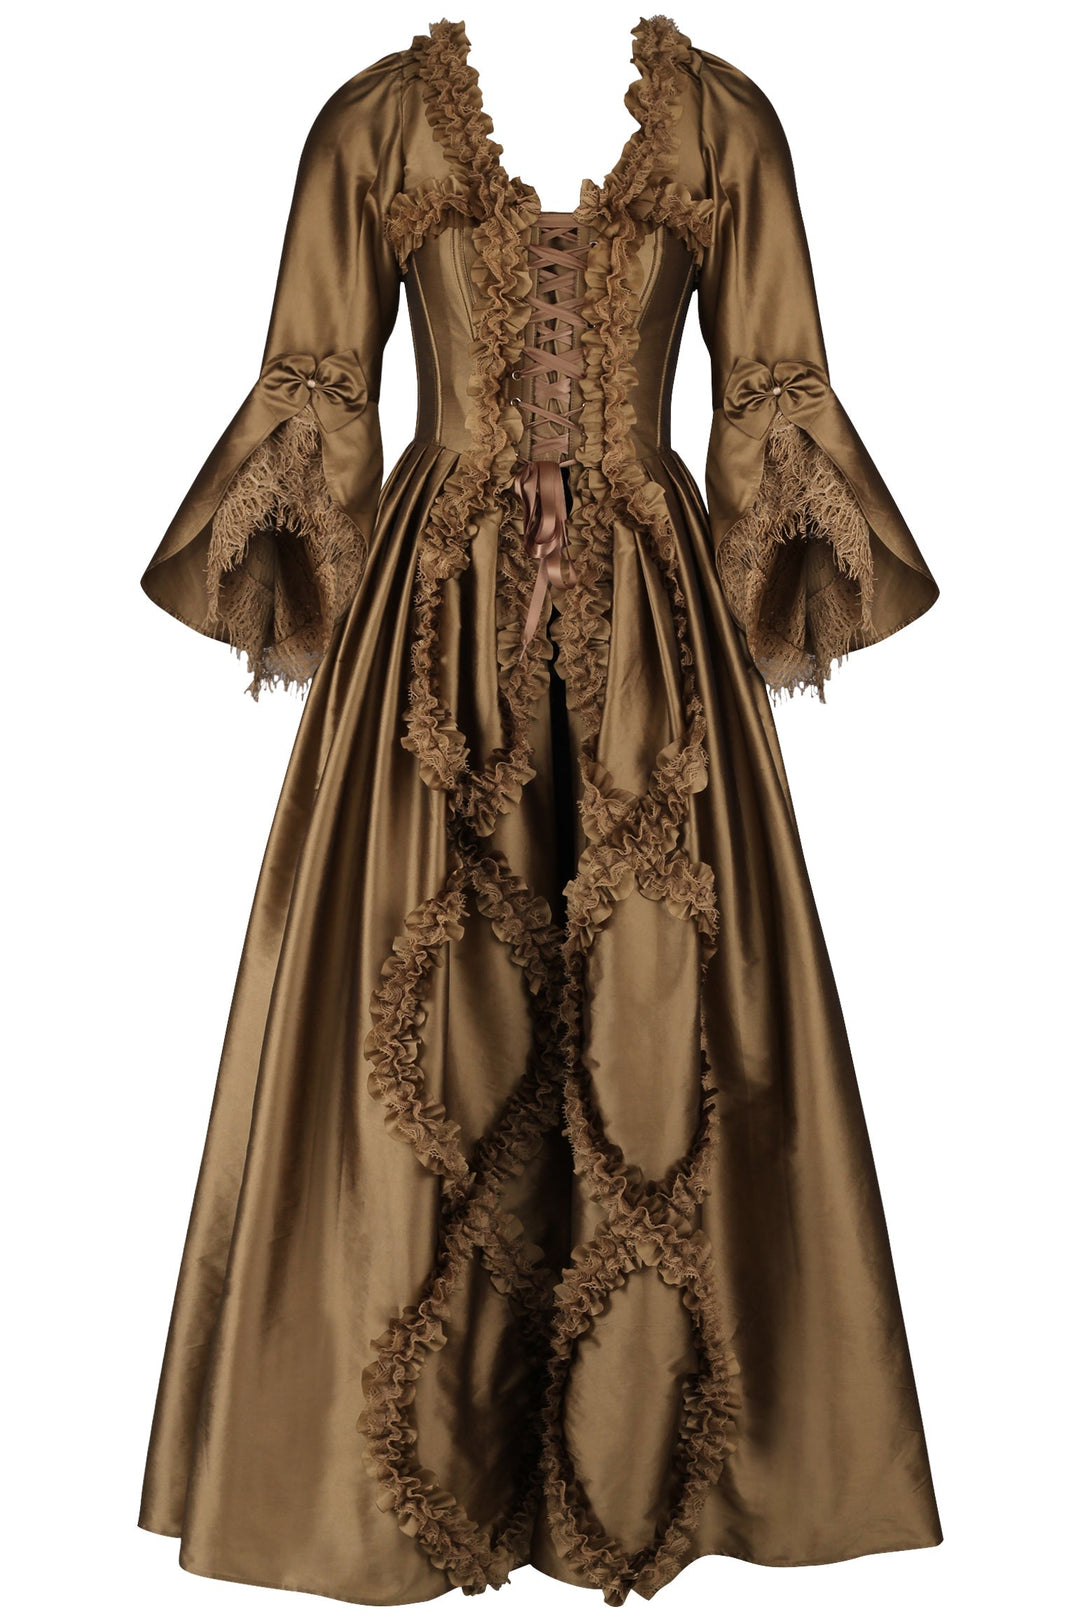 Renaissance Corset Gowns and Dresses